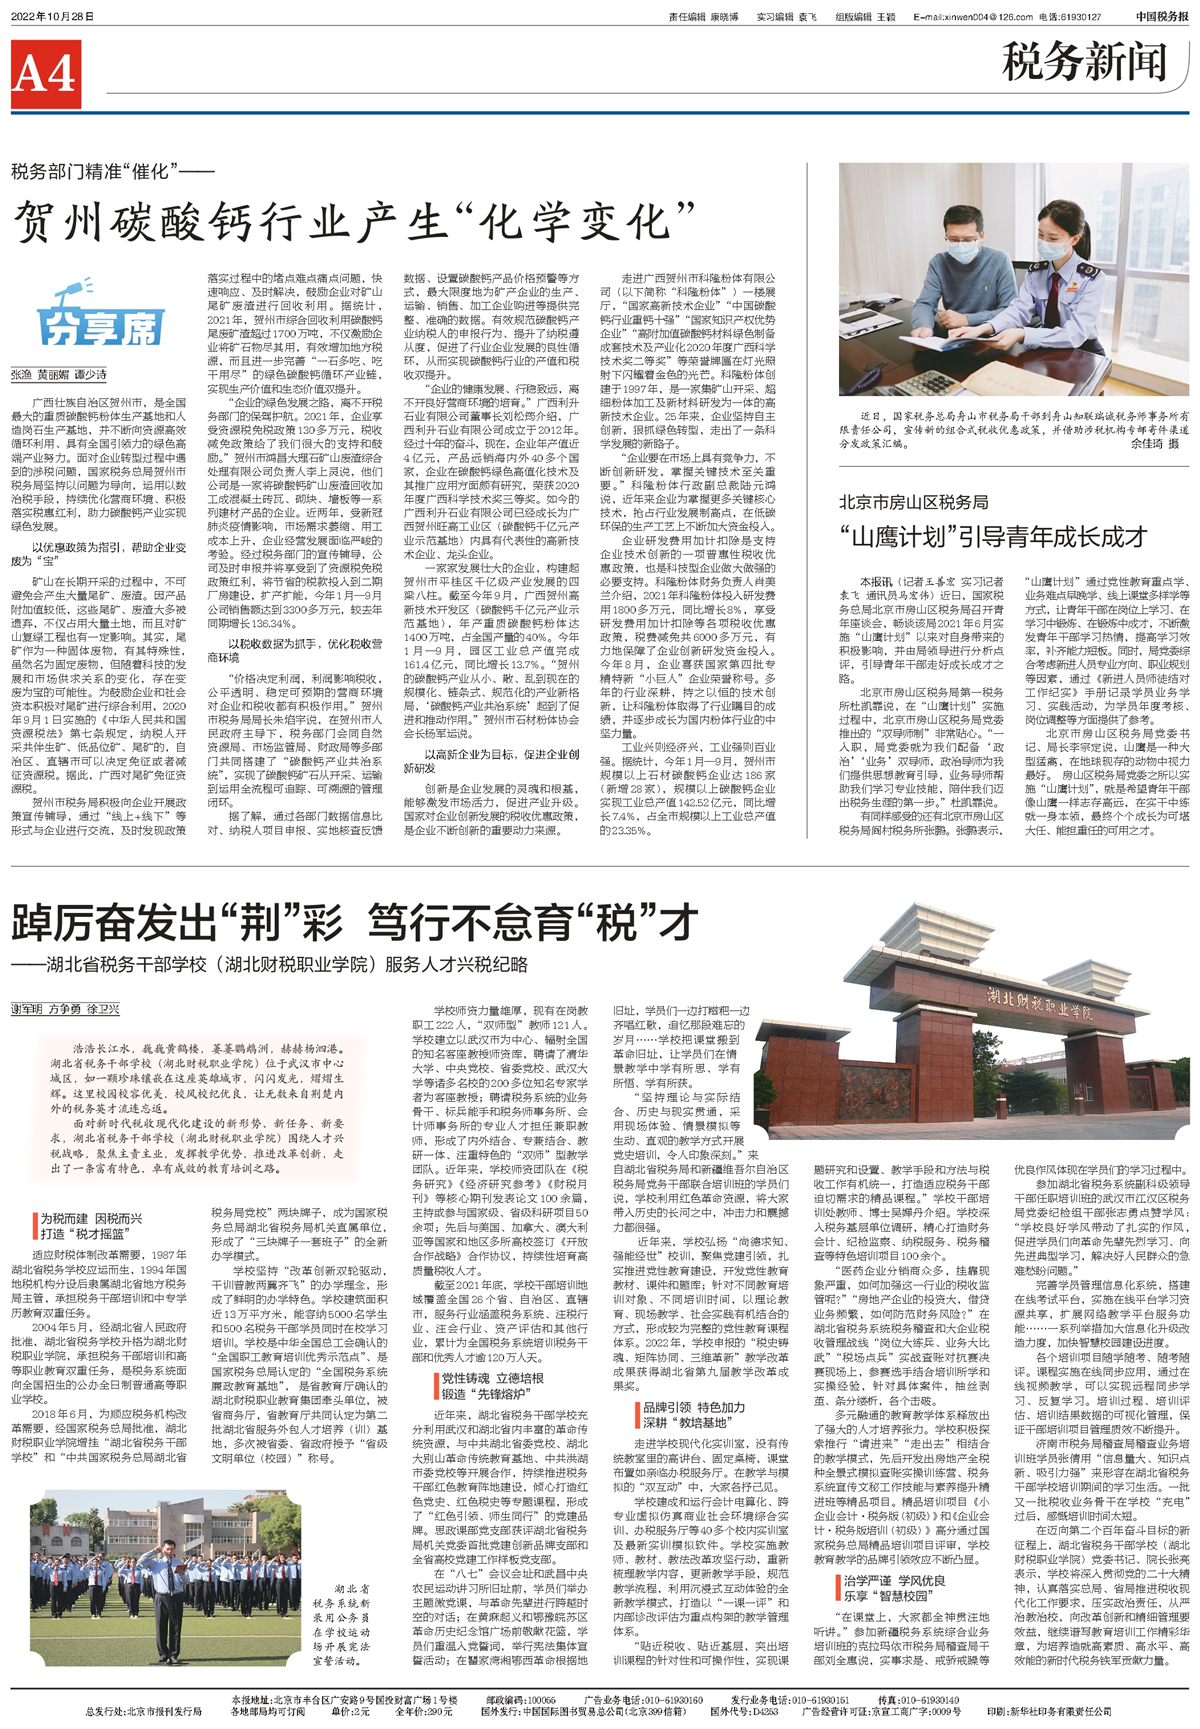 《中国税务报》专题聚焦我校服务“人才兴税”战略亮点特色